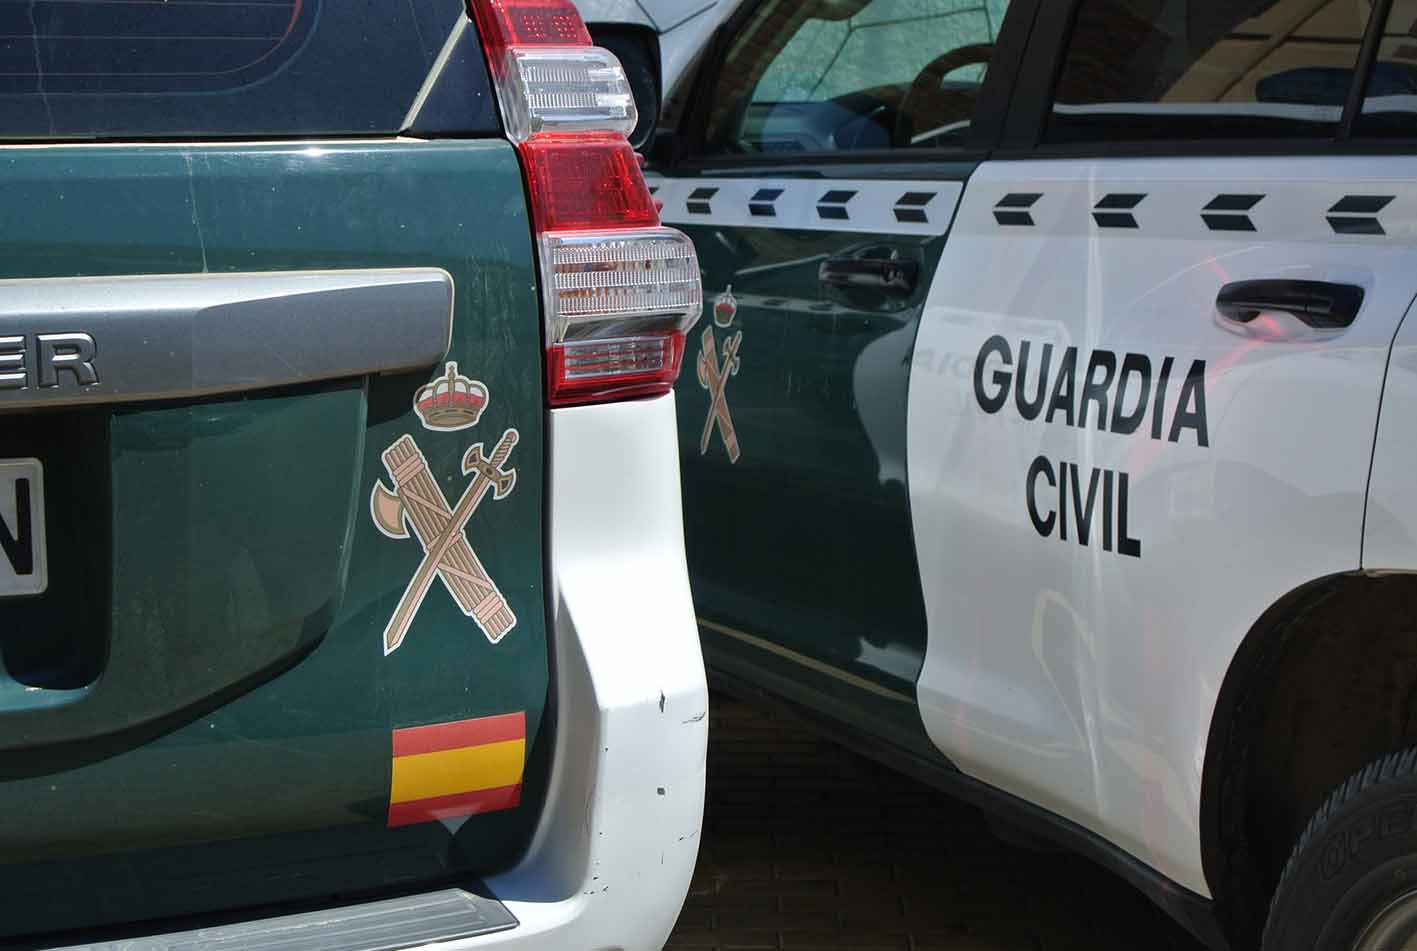 Imagen de dos vehículos de la Guardia Civil.